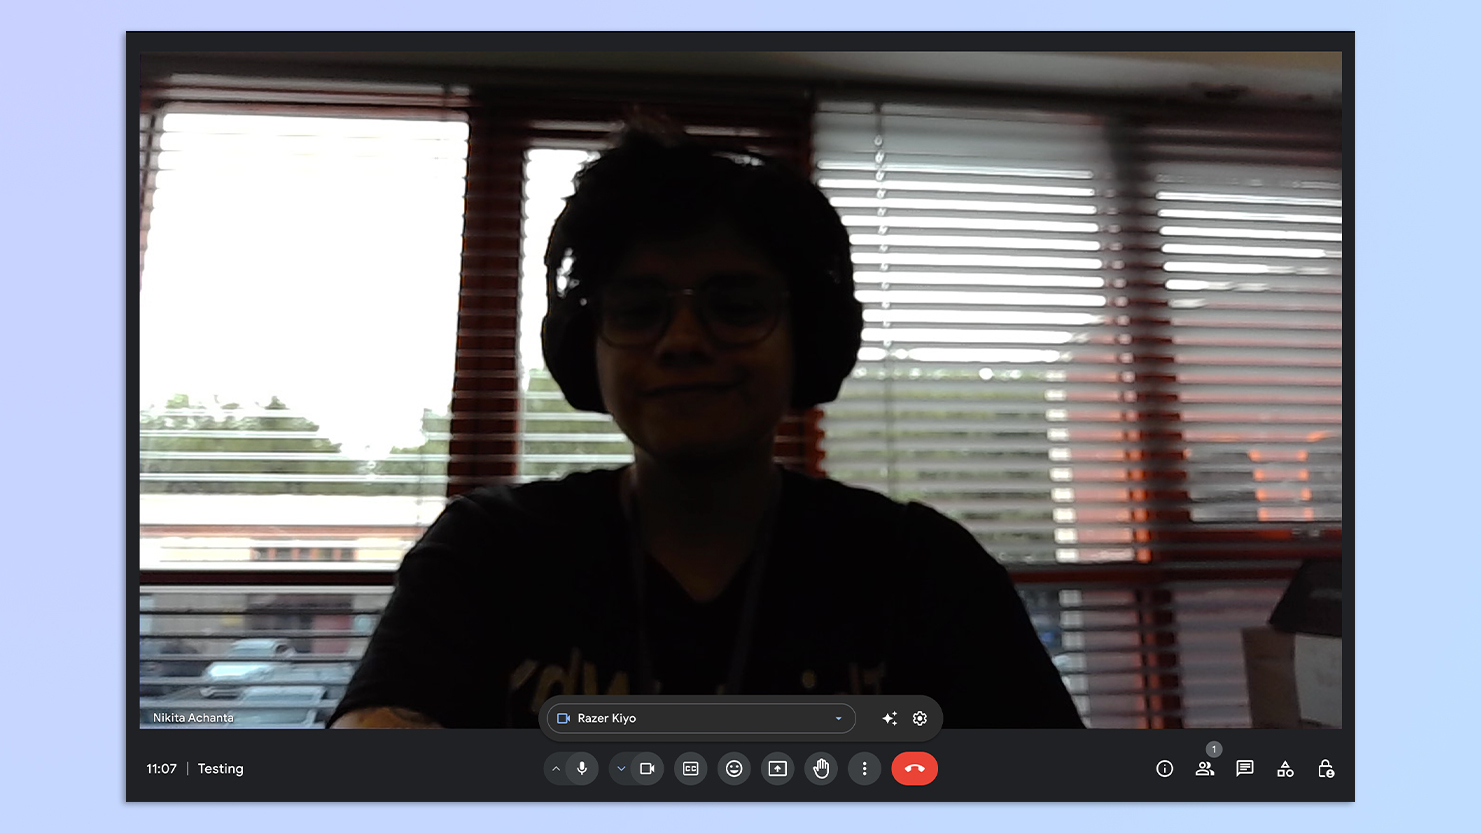 Een screenshot van een persoon die tegen een helder raam zit, gemaakt met een Razer Kiyo-webcam